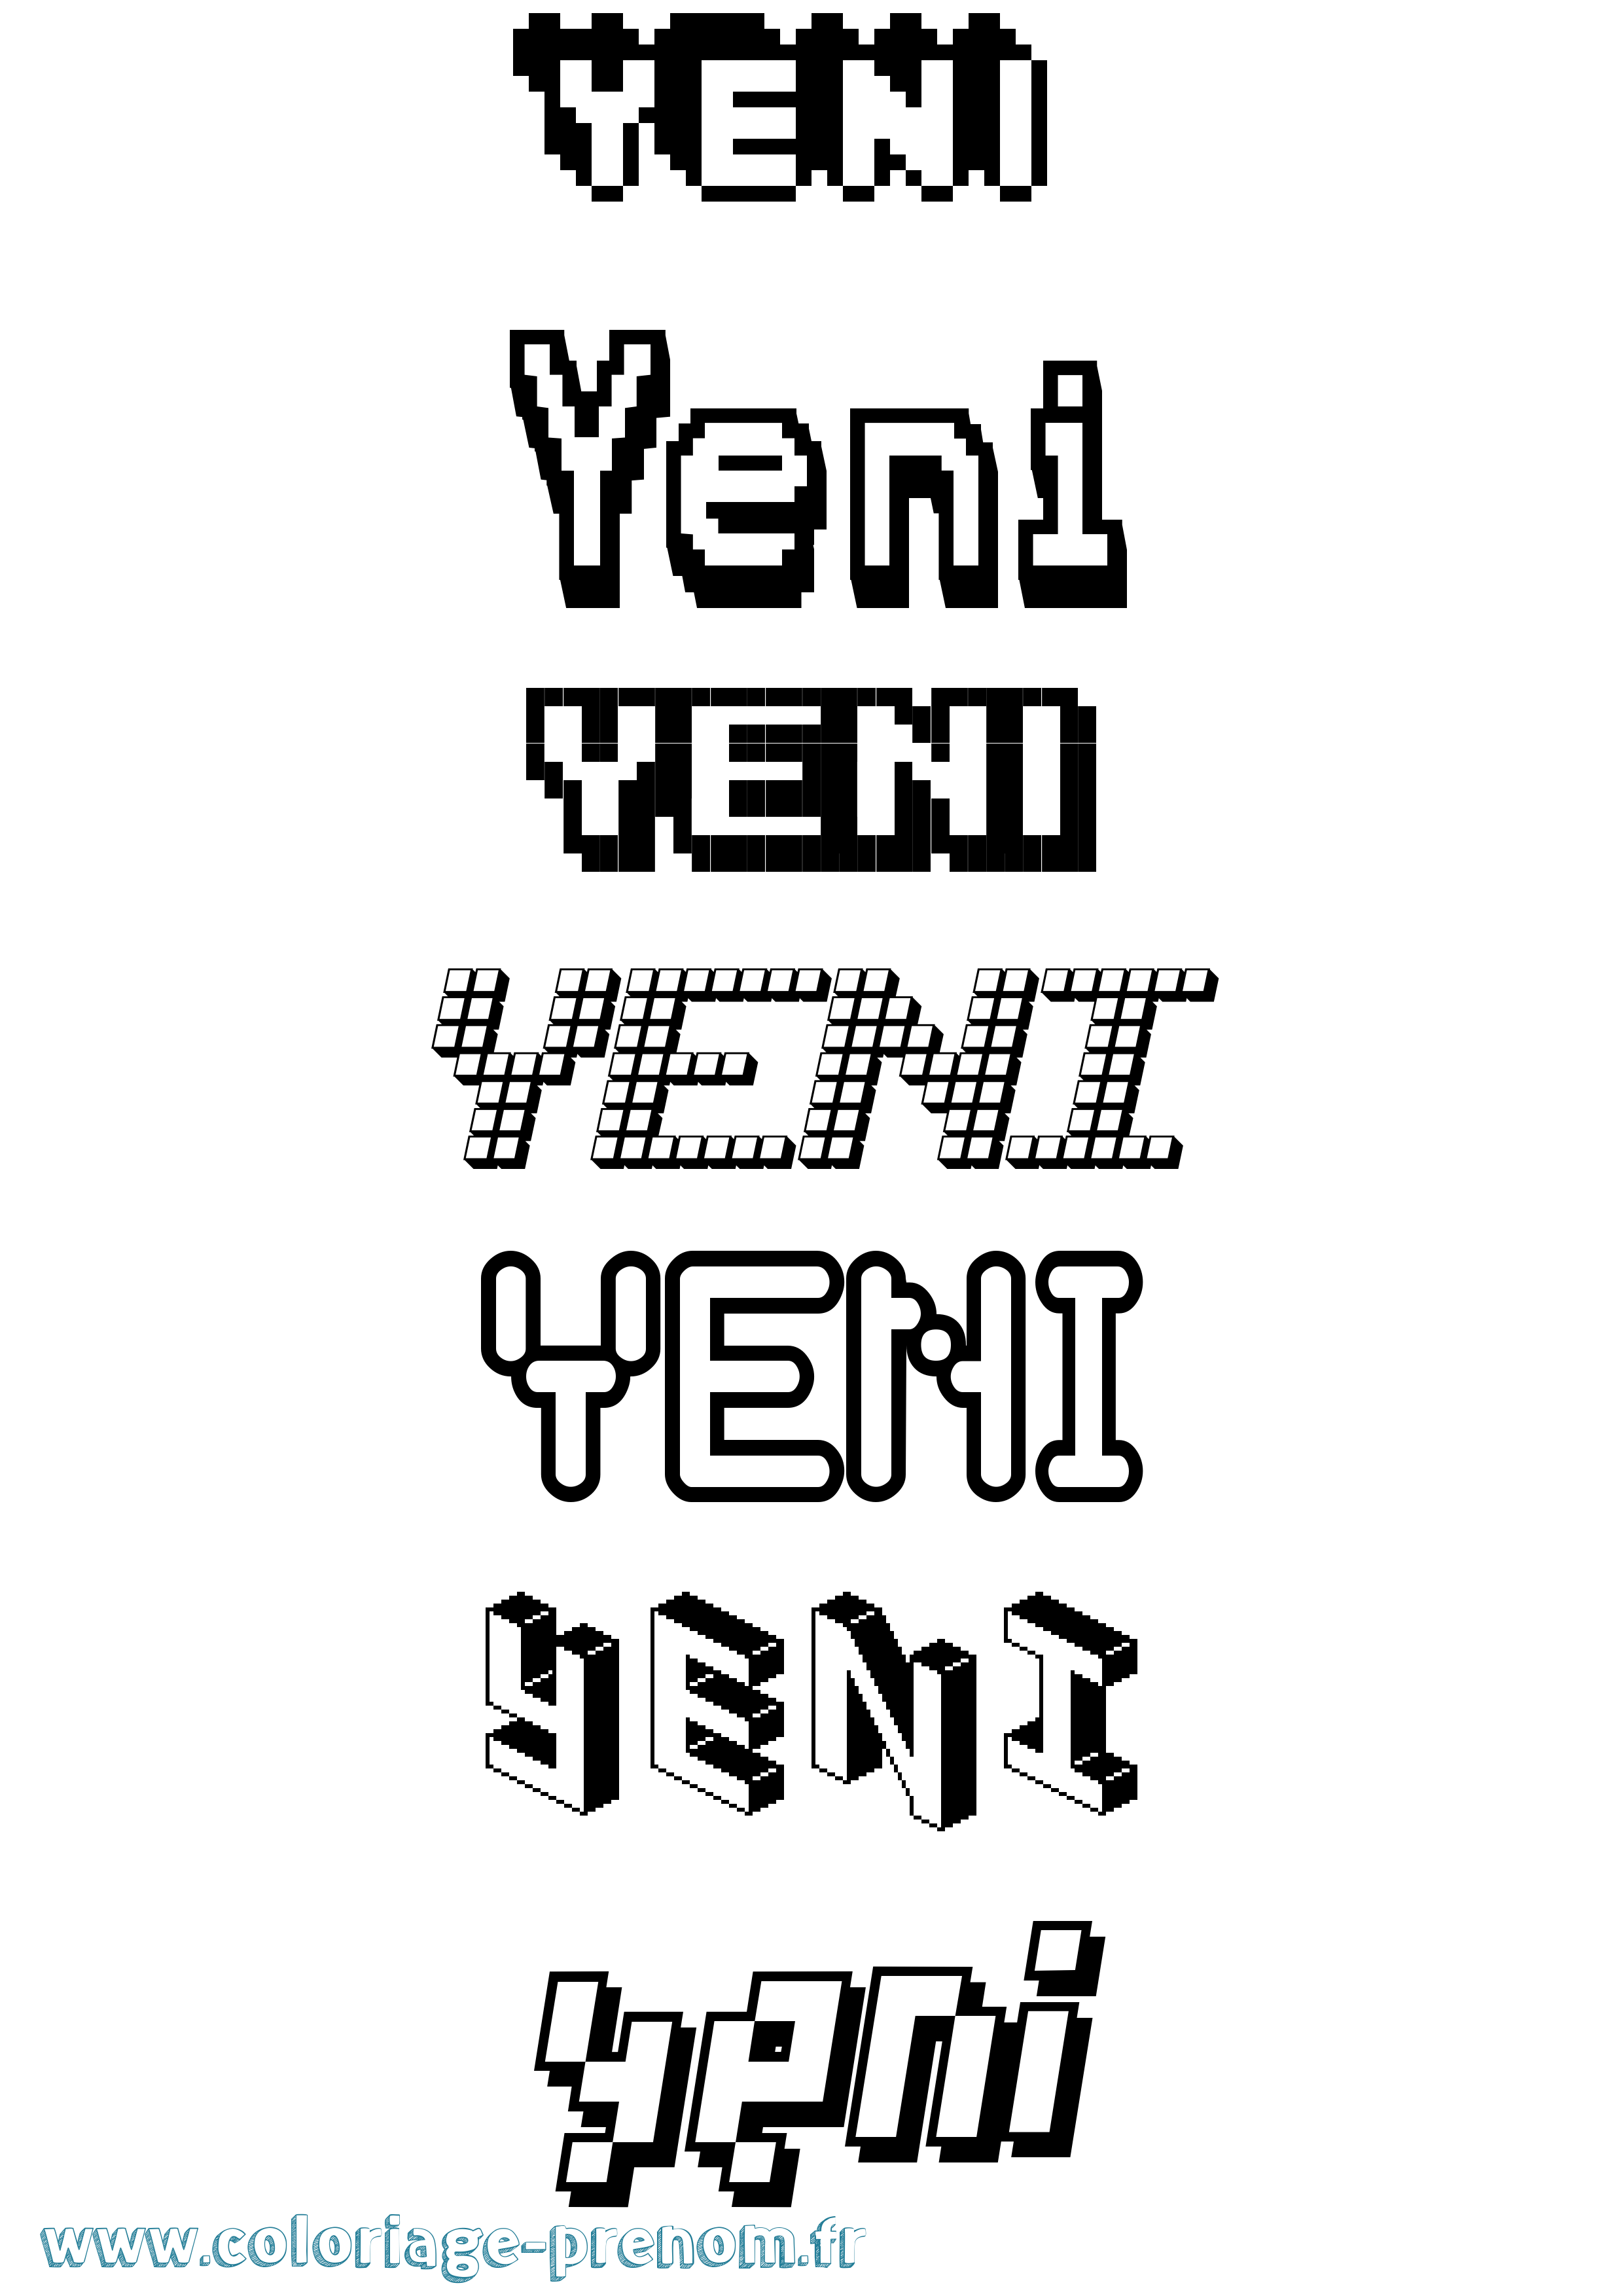 Coloriage prénom Yeni Pixel